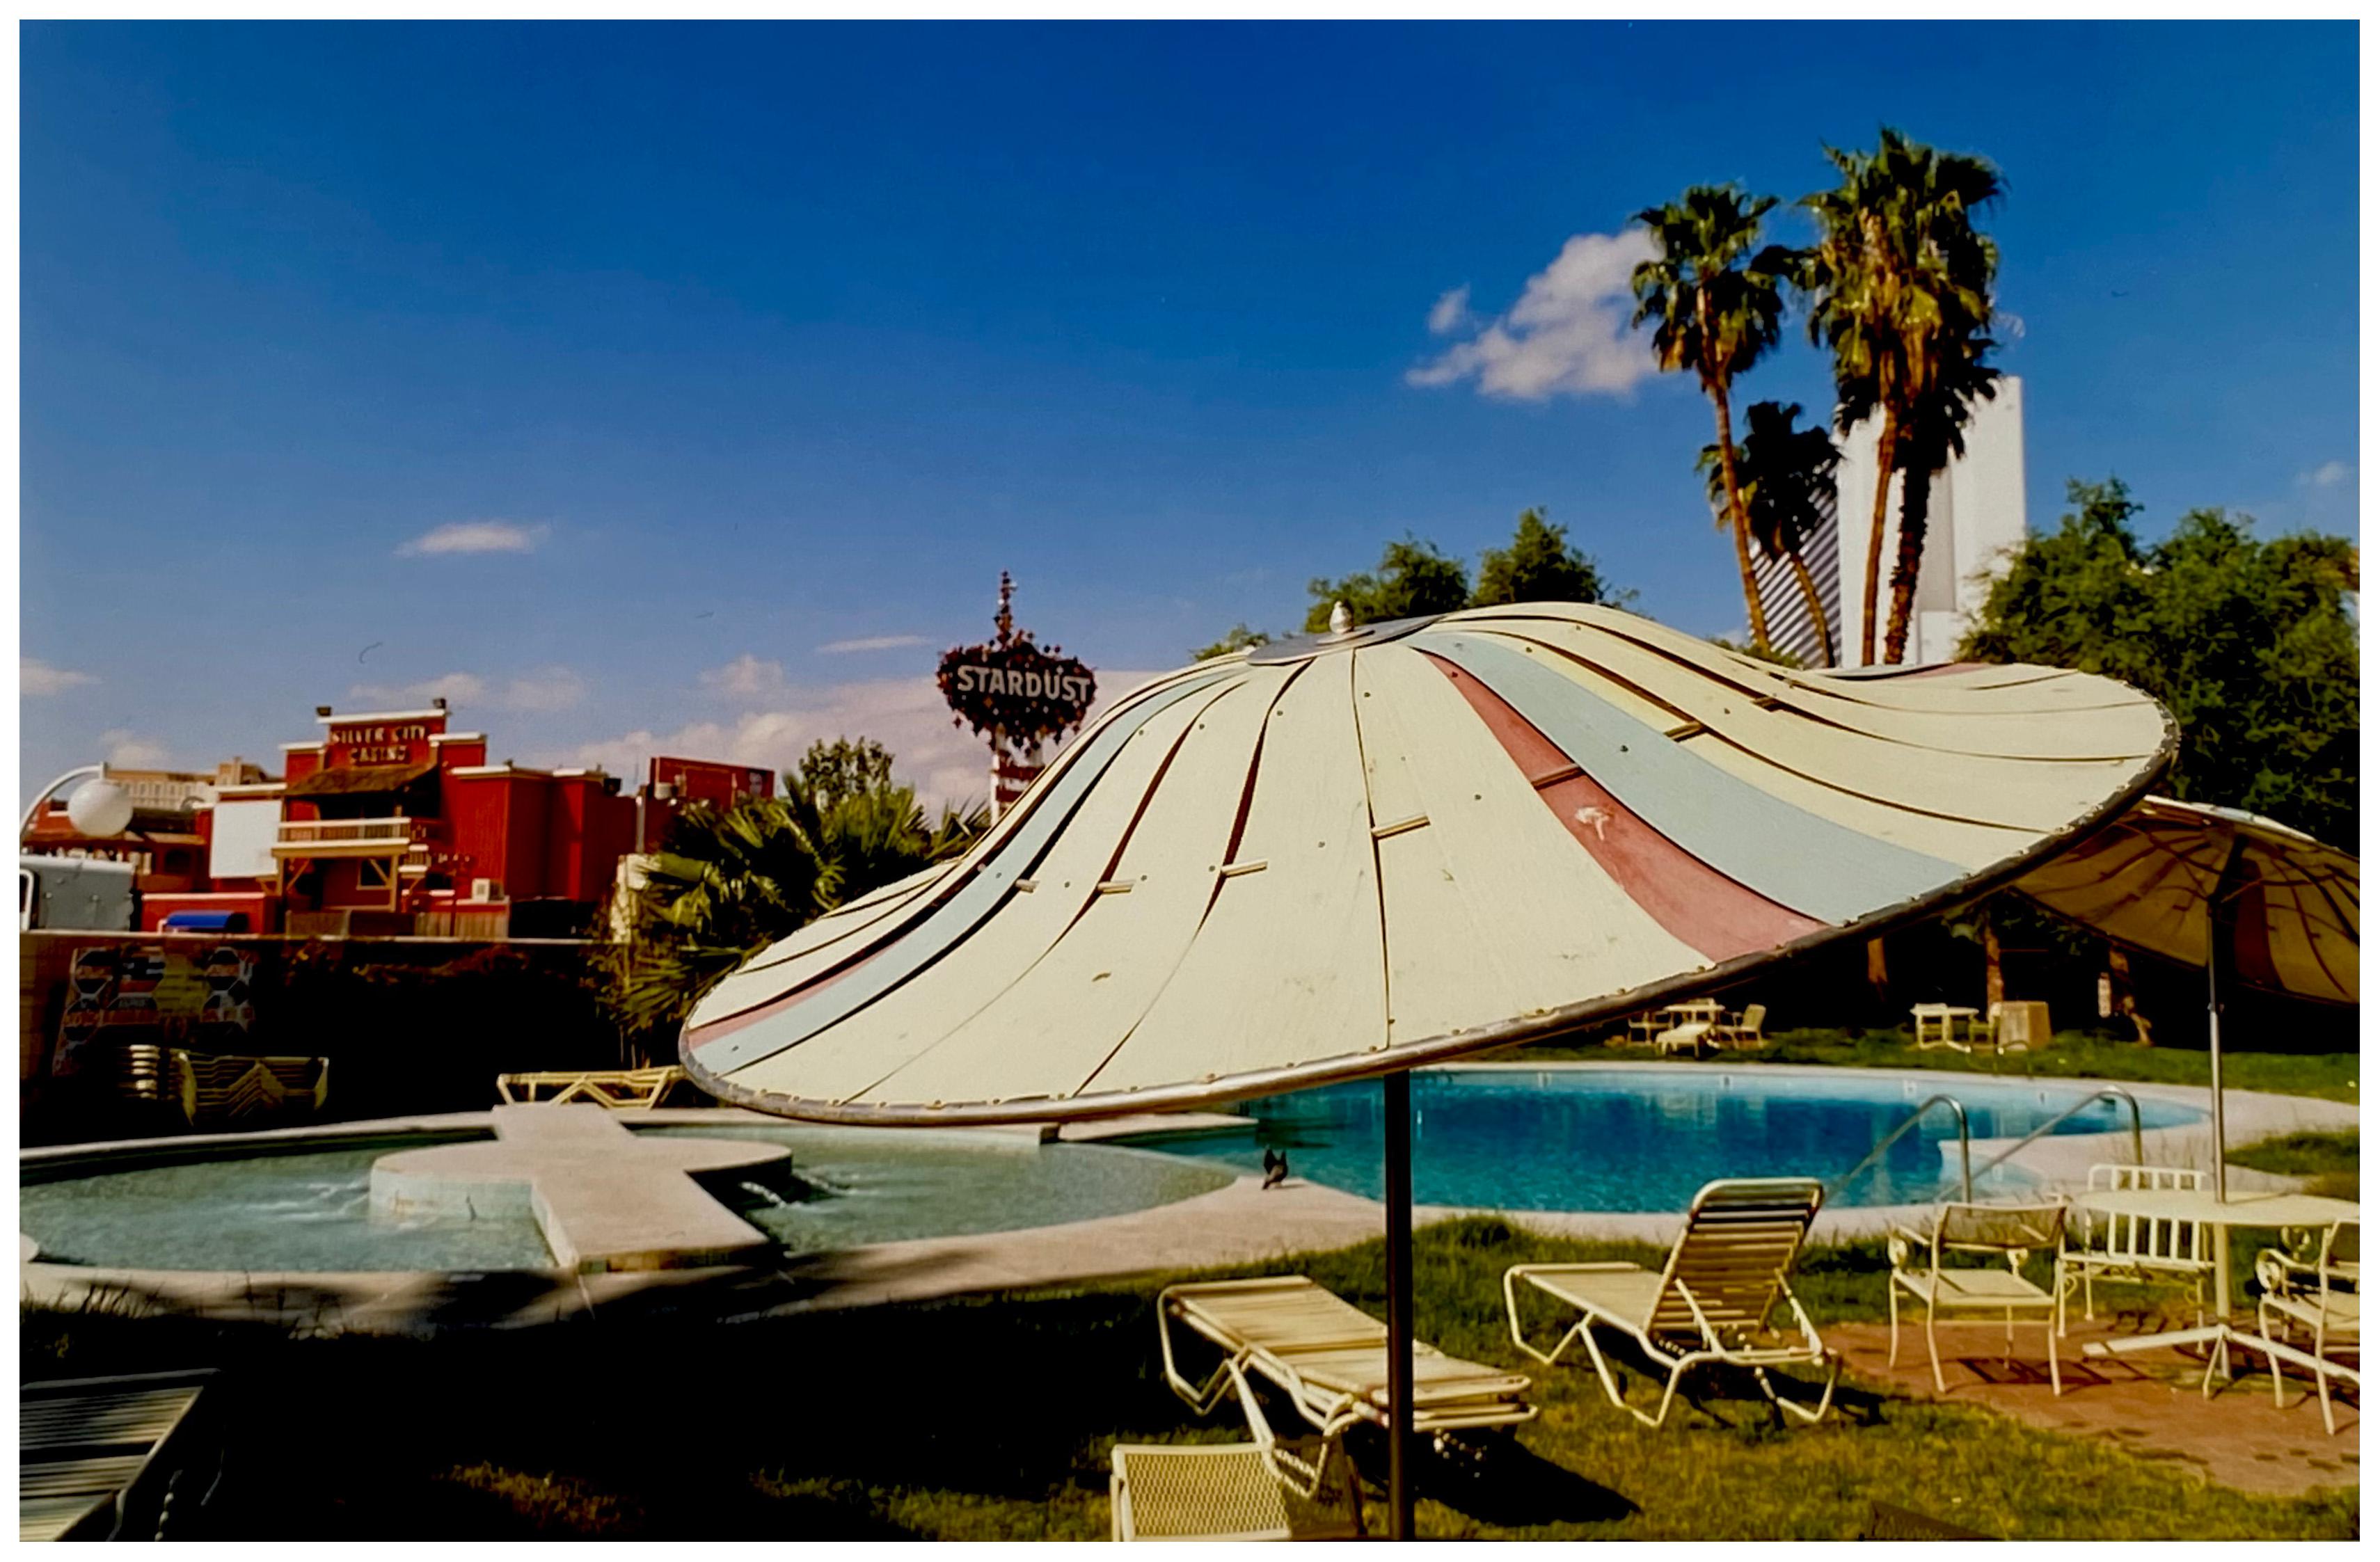 Richard Heeps Print - Poolside Parasol, El Morocco Motel, Las Vegas - American Color Photography